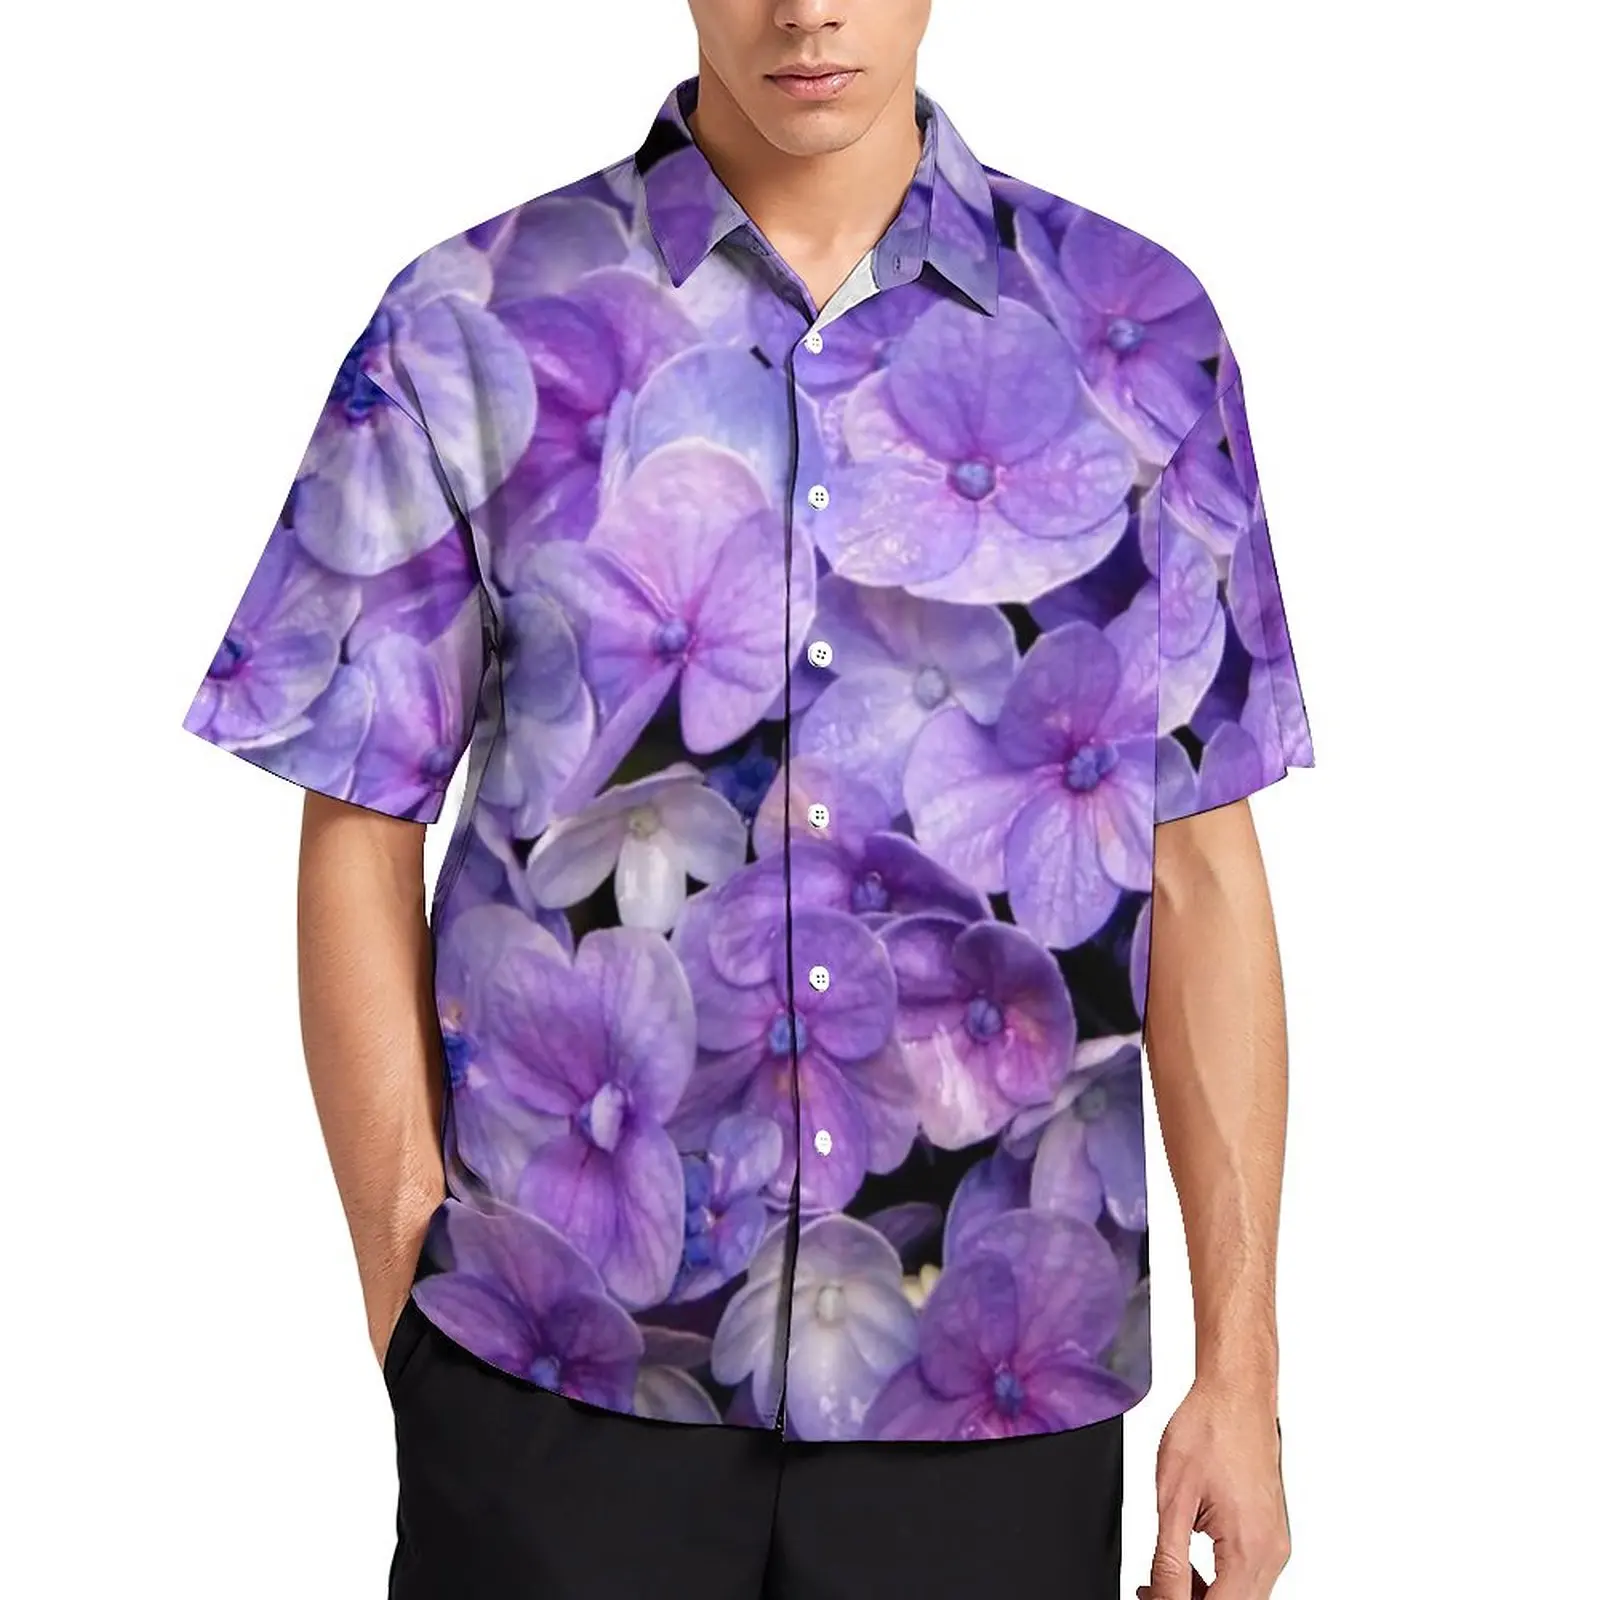 

Лавандовая Повседневная рубашка, фиолетовая Свободная рубашка для отпуска с цветочным принтом, гавайская Эстетическая блузка, Топ оверсайз с коротким рукавом и графическим принтом